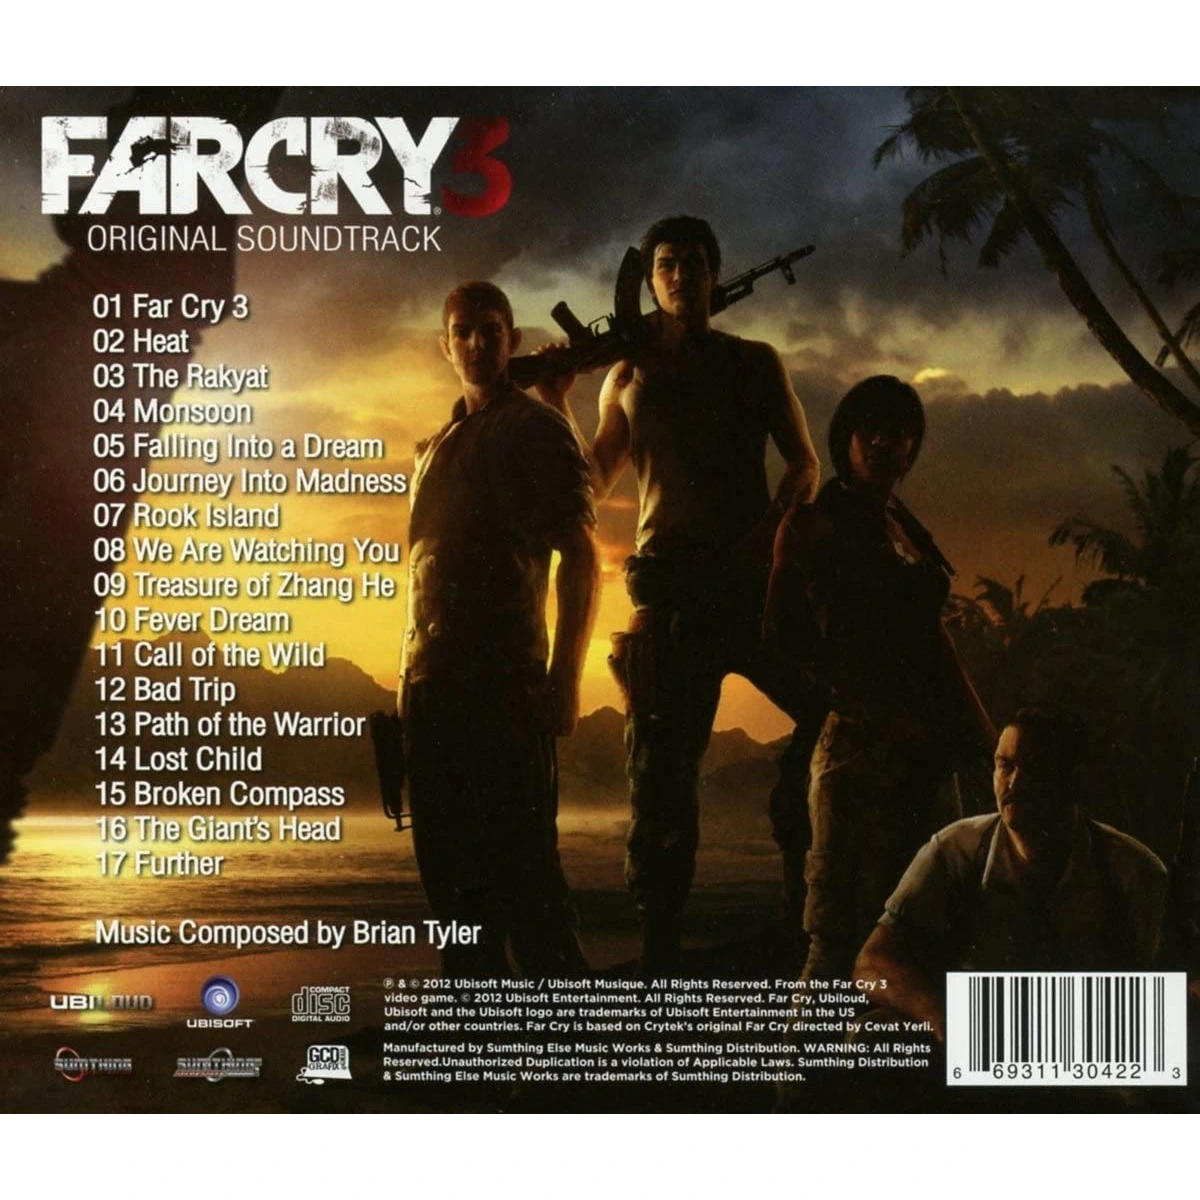 Музыка из far cry. Far Cry 3 OST. Far Cry 3 (2012). Brian Tyler far Cry 3. Far Cry 3 Original Soundtrack.